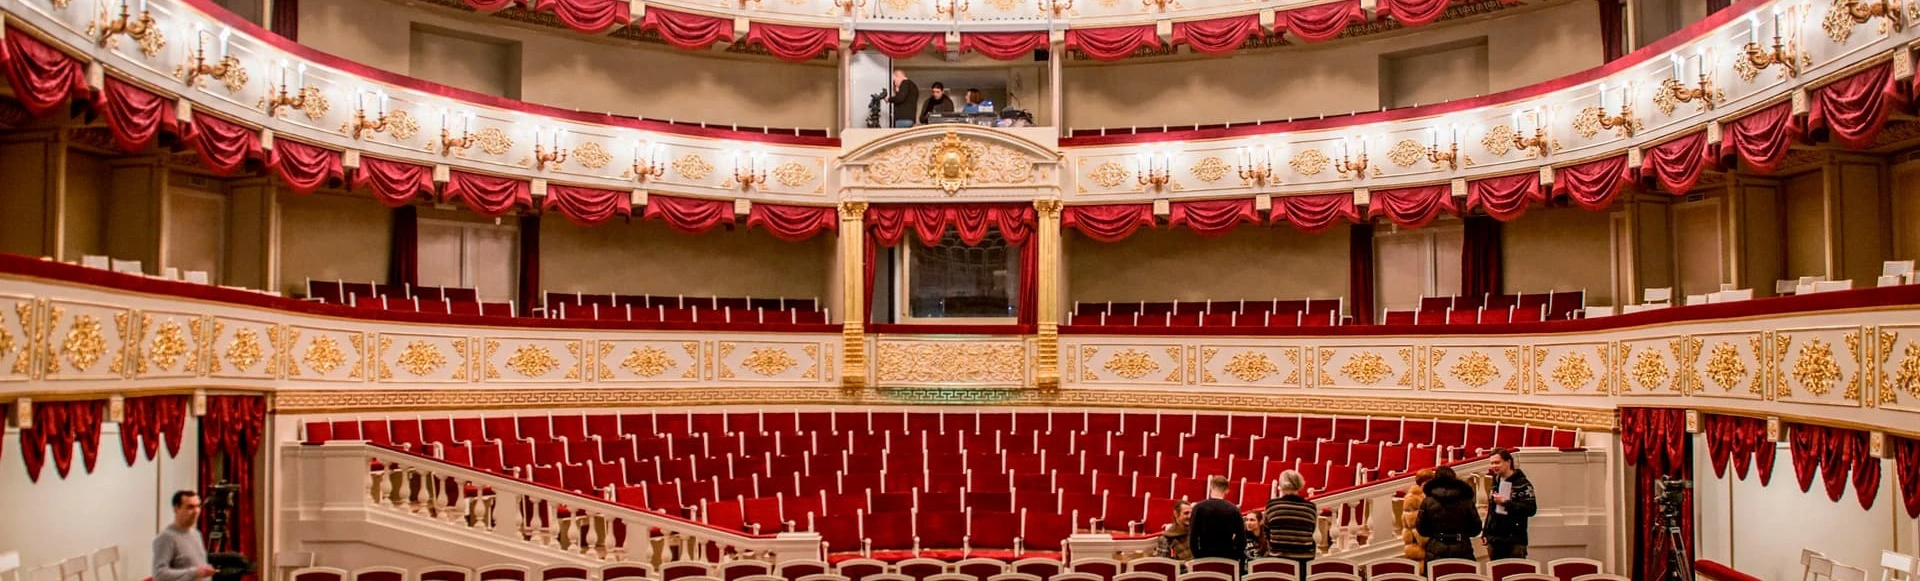 Малый театр – участник акции «Общая сцена»